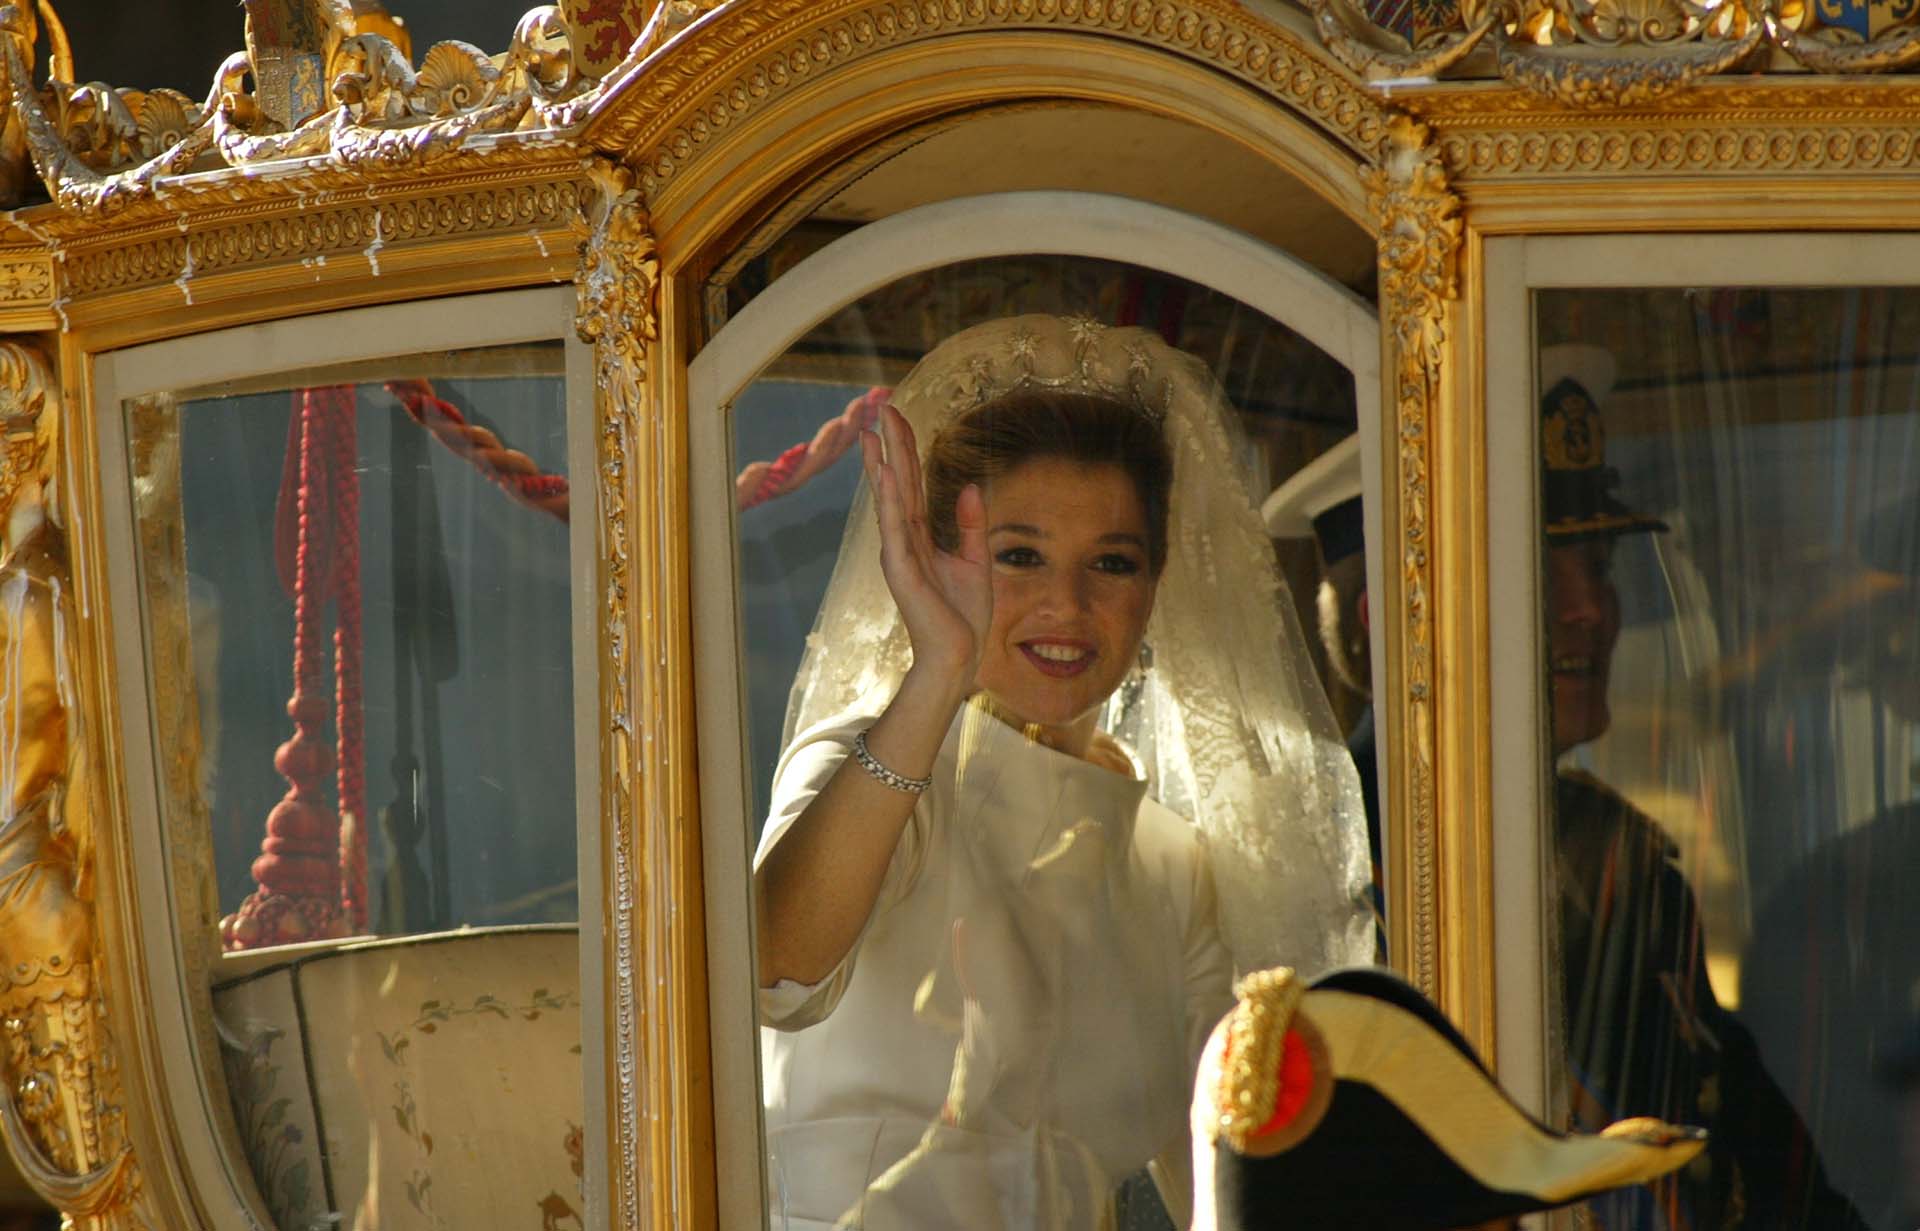 La argentina contrajo matrimonio con Guillermo Alejandro en 2022 y se convirtió en la reina consorte de Países Bajos. (Sion Touhig/Getty Images)